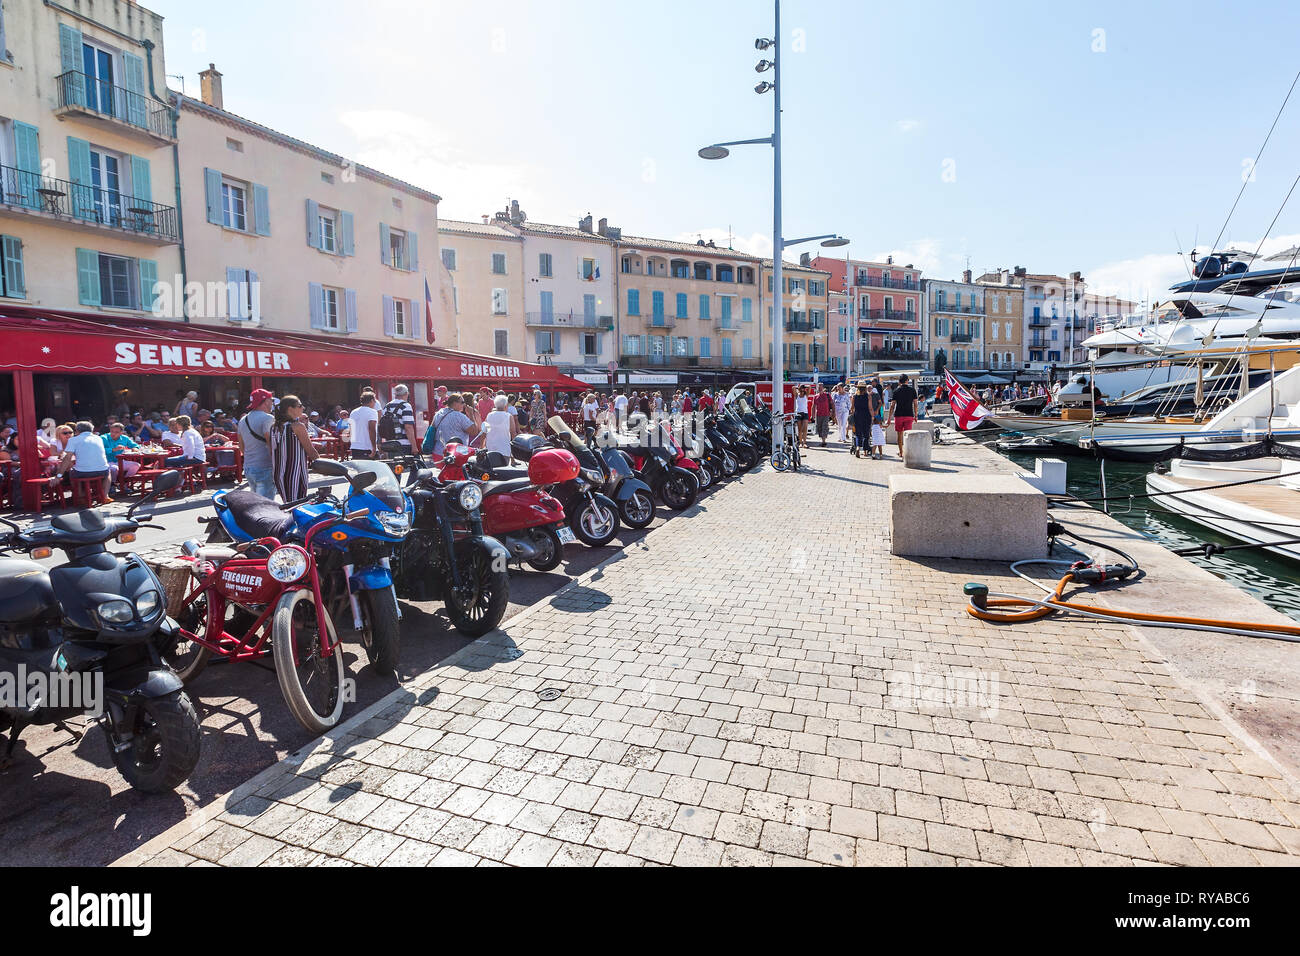 Promenade mit Geschaeften, das wichtigste Fortbewegungsmittel sind die vielen Motorräder in Saint Tropez, Frankreich, 01.09.2018 Bildnachweis: Mario Stockfoto